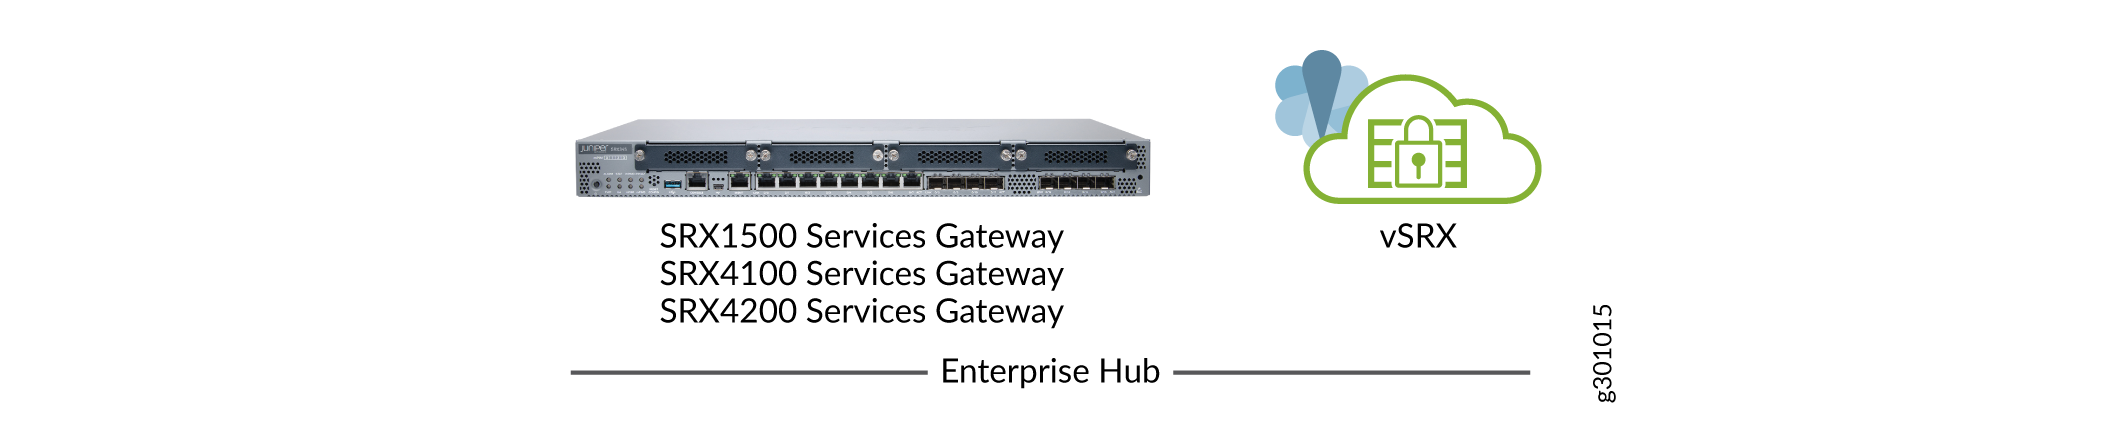 SD-WAN Enterprise Hub Devices